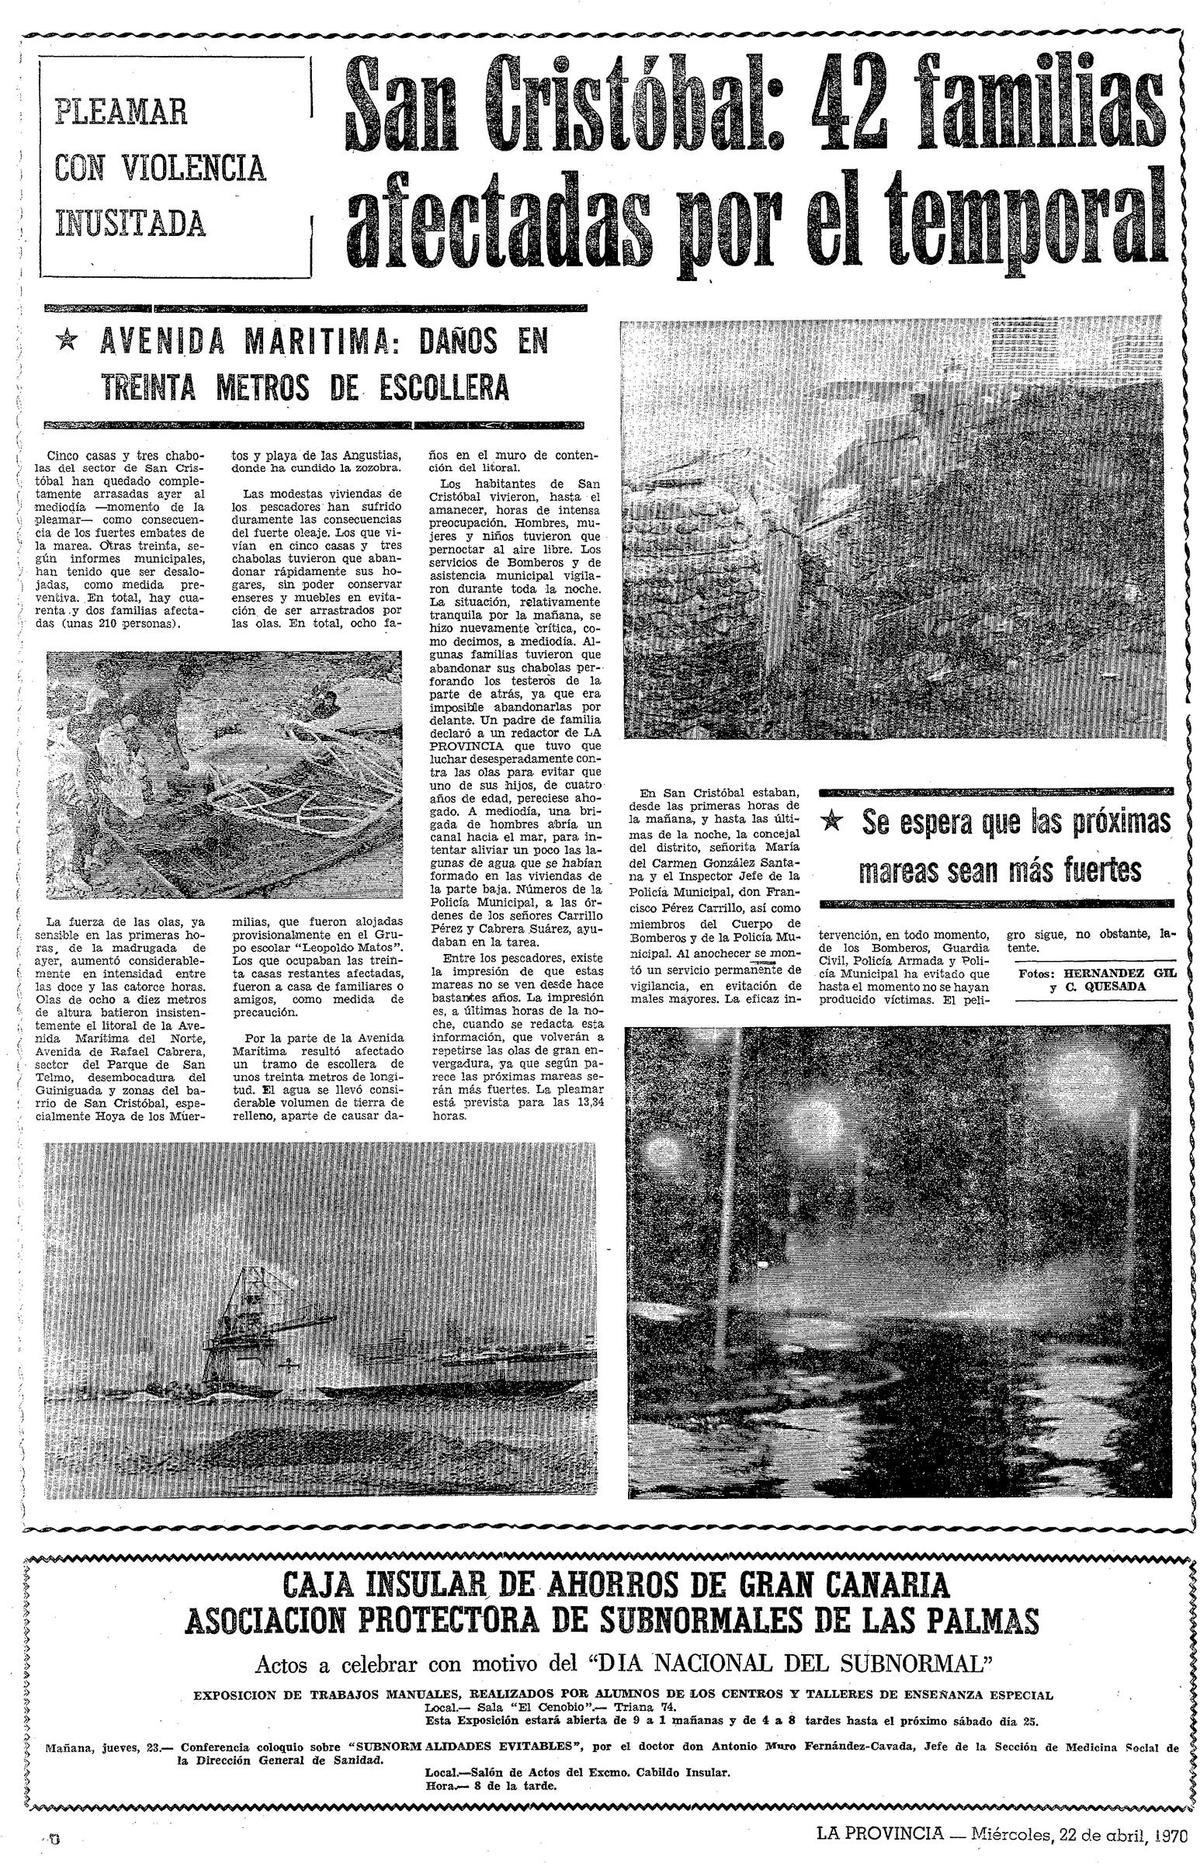 Página del periódico La Provincia del 22 de abril de 1970 sobre el suceso.